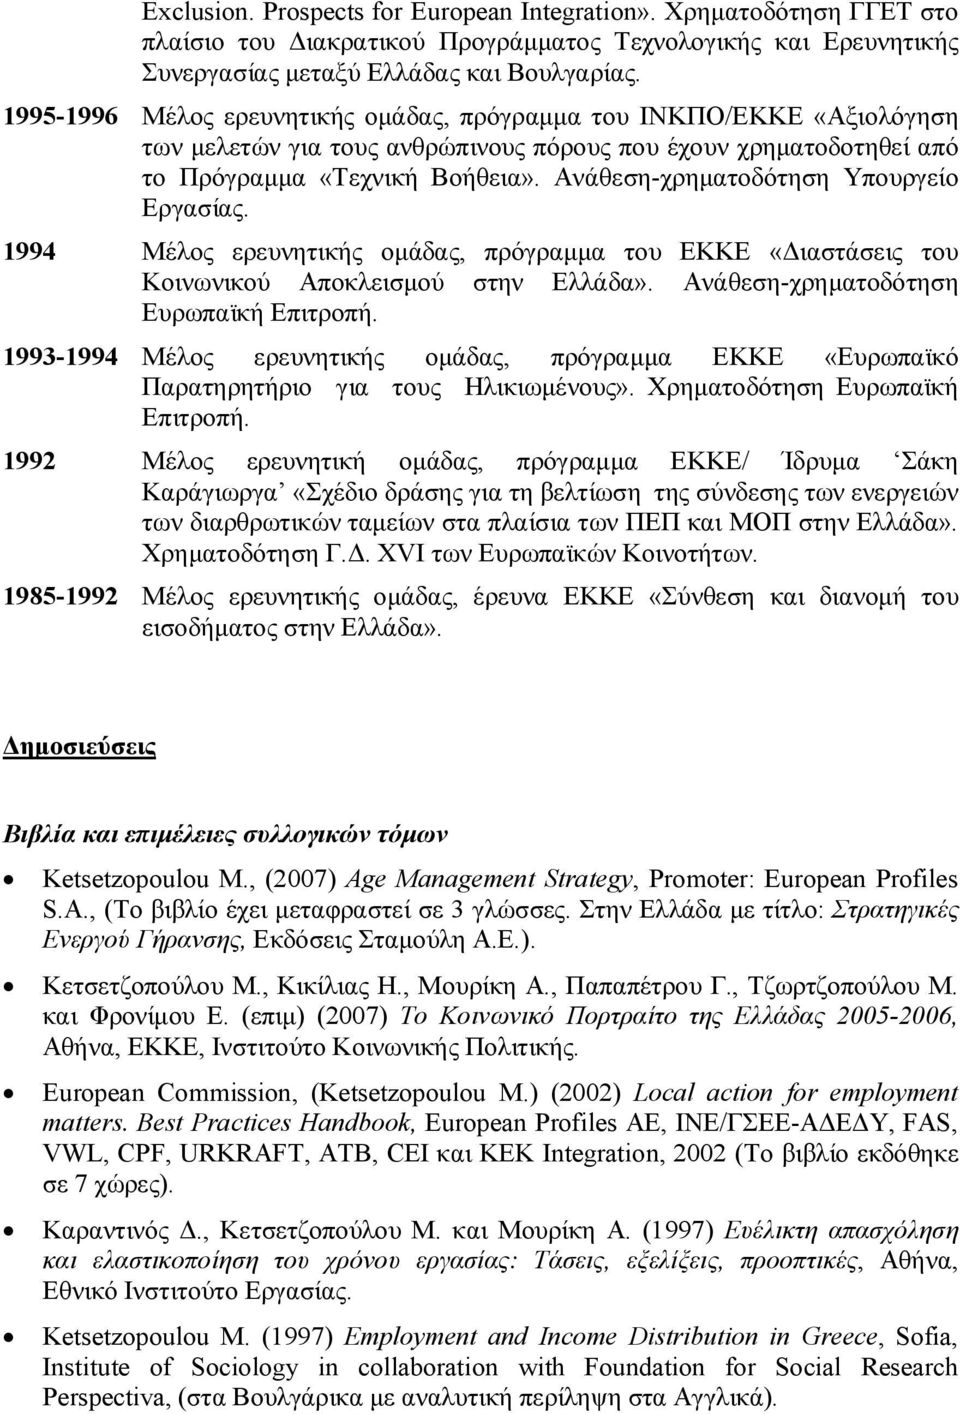 Ανάθεση-χρηματοδότηση Υπουργείο Εργασίας. 1994 Μέλος ερευνητικής ομάδας, πρόγραμμα του ΕΚΚΕ «Διαστάσεις του Κοινωνικού Αποκλεισμού στην Ελλάδα». Ανάθεση-χρηματοδότηση Ευρωπαϊκή Επιτροπή.